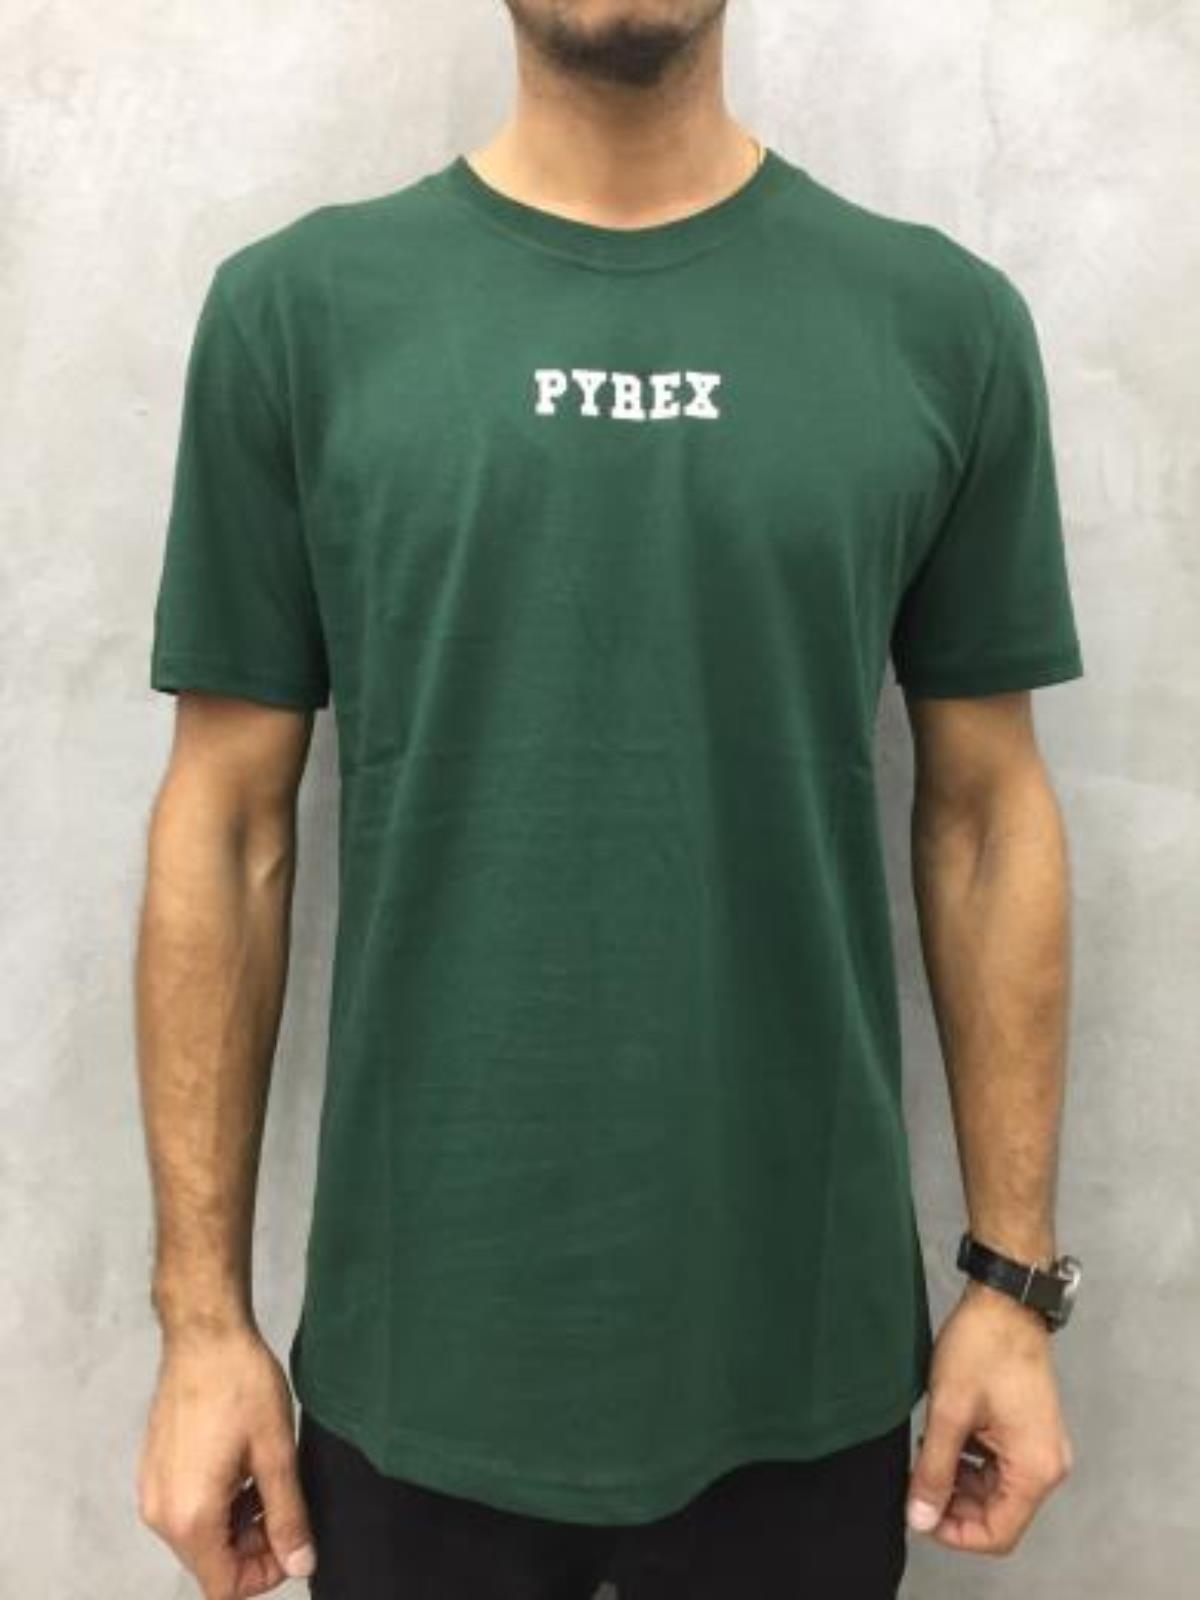 Pyrex T-shirt